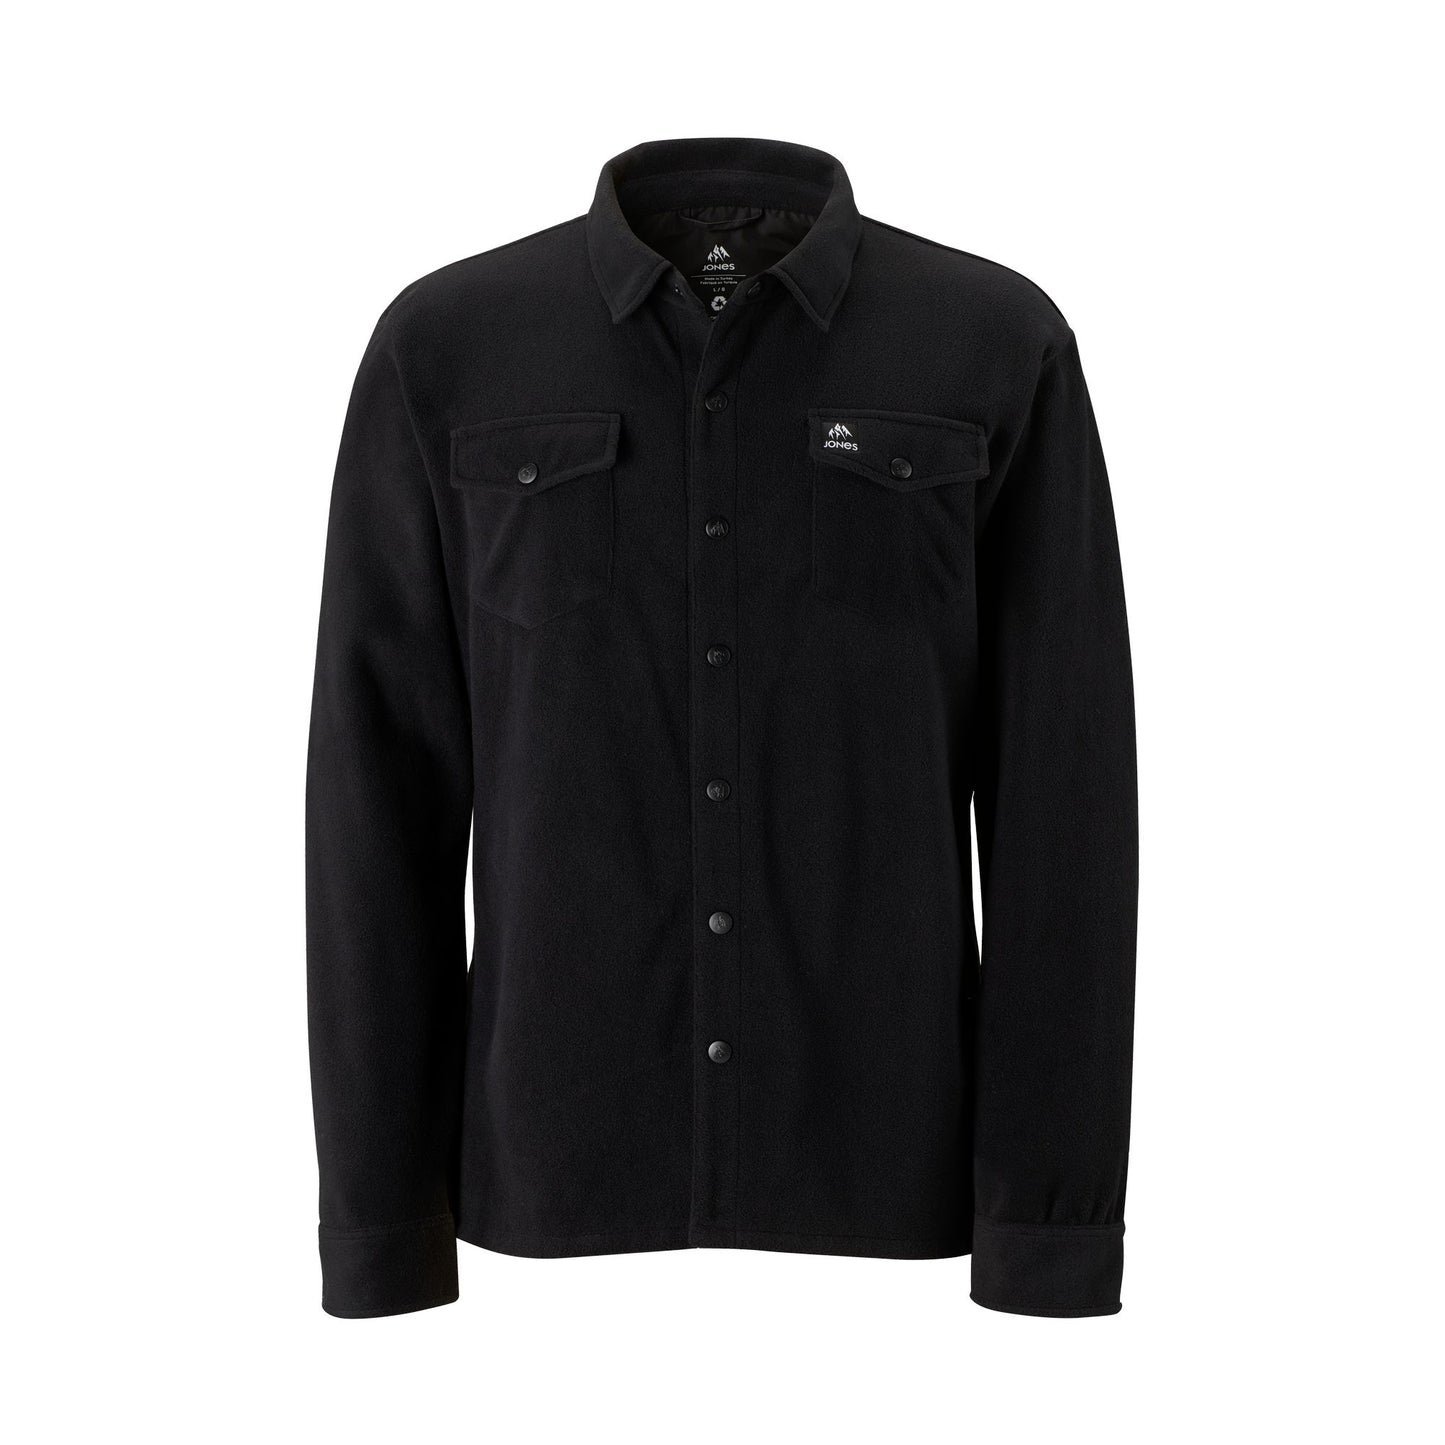 Jones December Fleece Shirt Black M LS Shirts